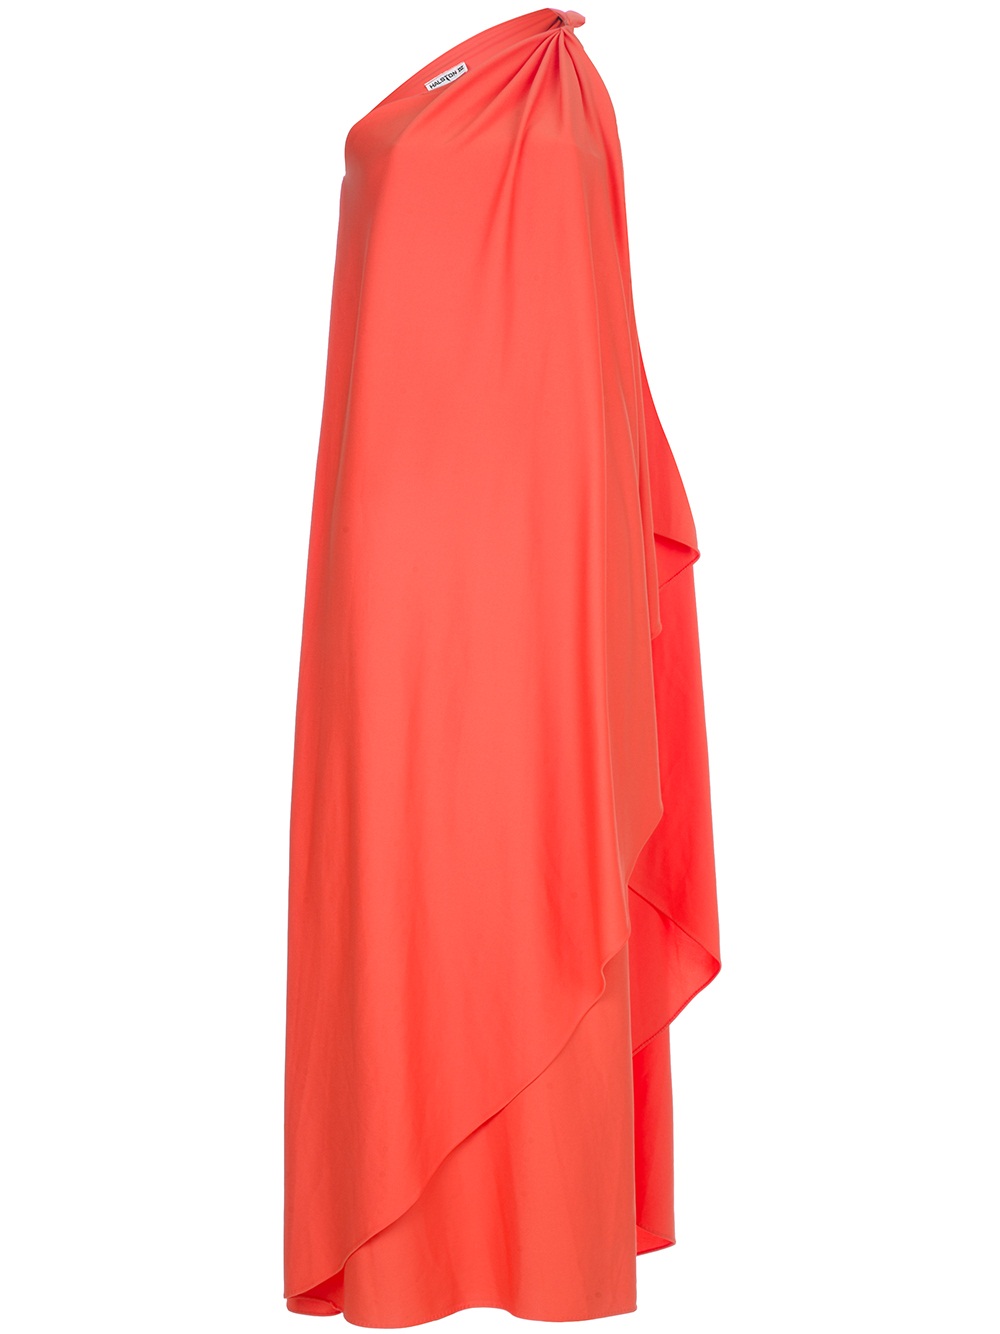 Lyst - Halston Stola Dress in Orange